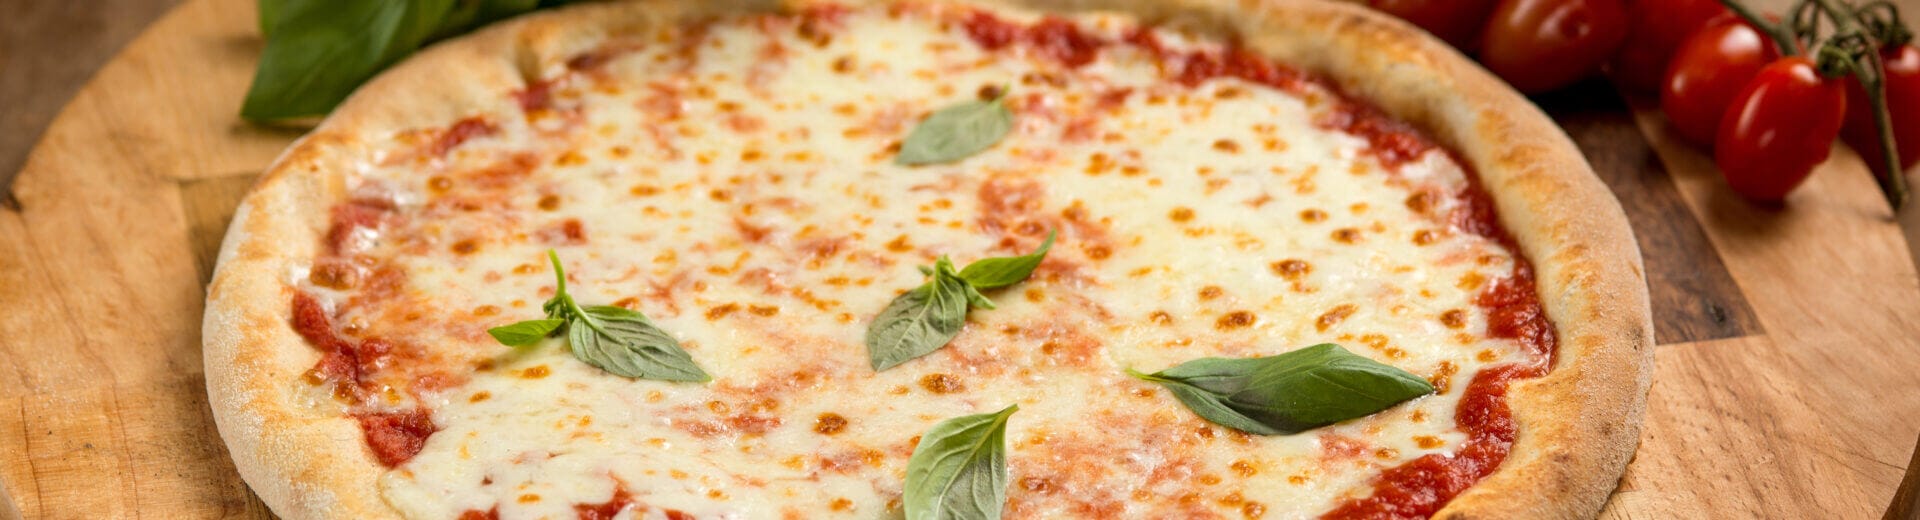 10 curiosità sulla pizza, che pochi conoscono